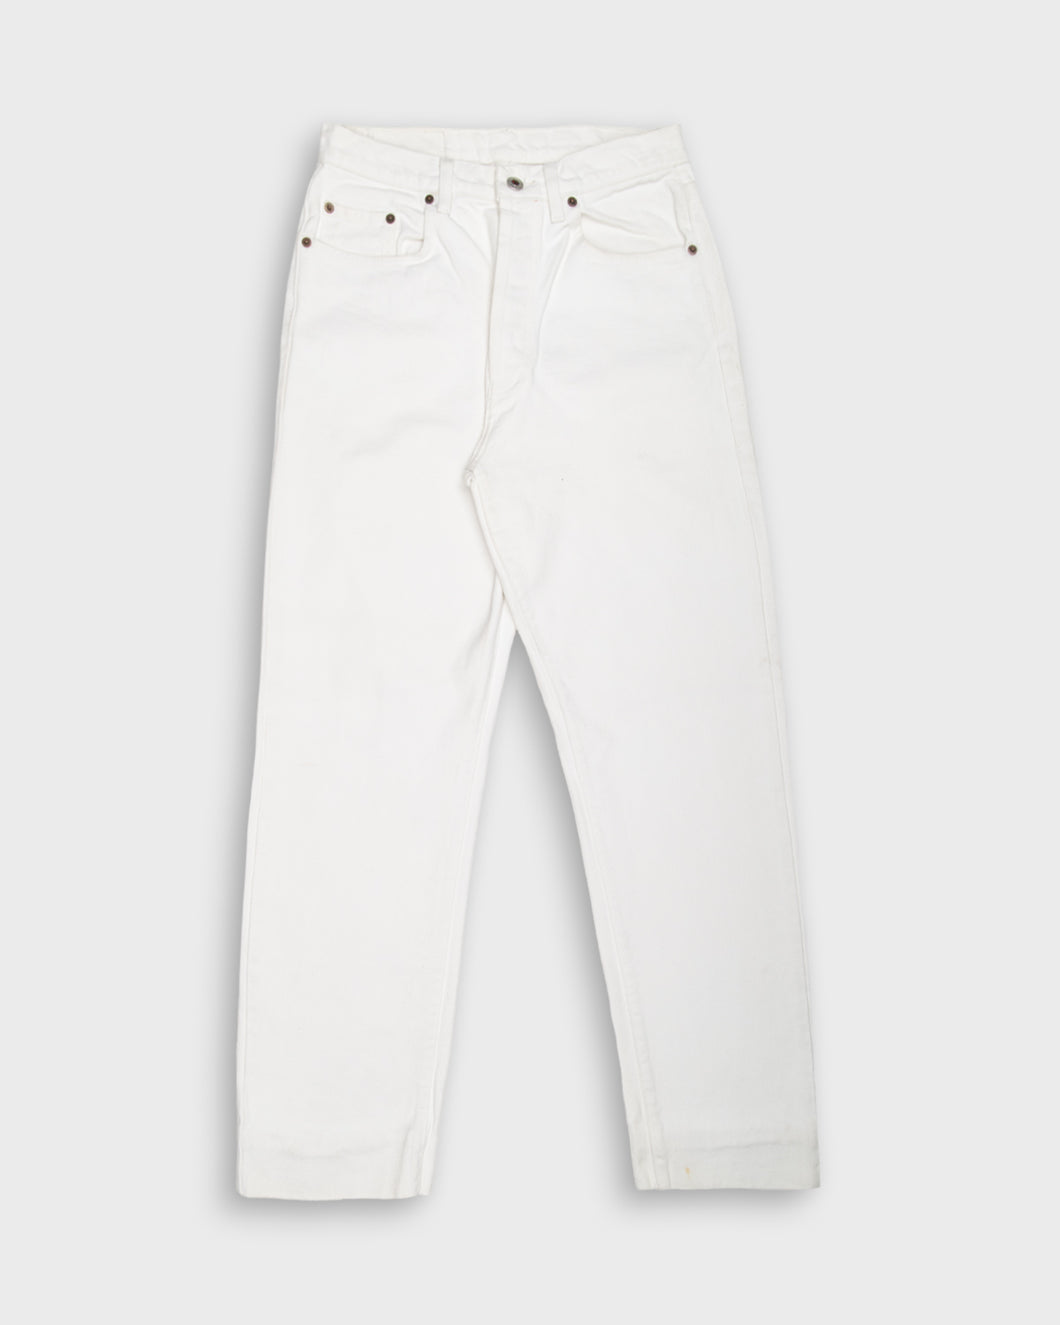 90's white schott jeans